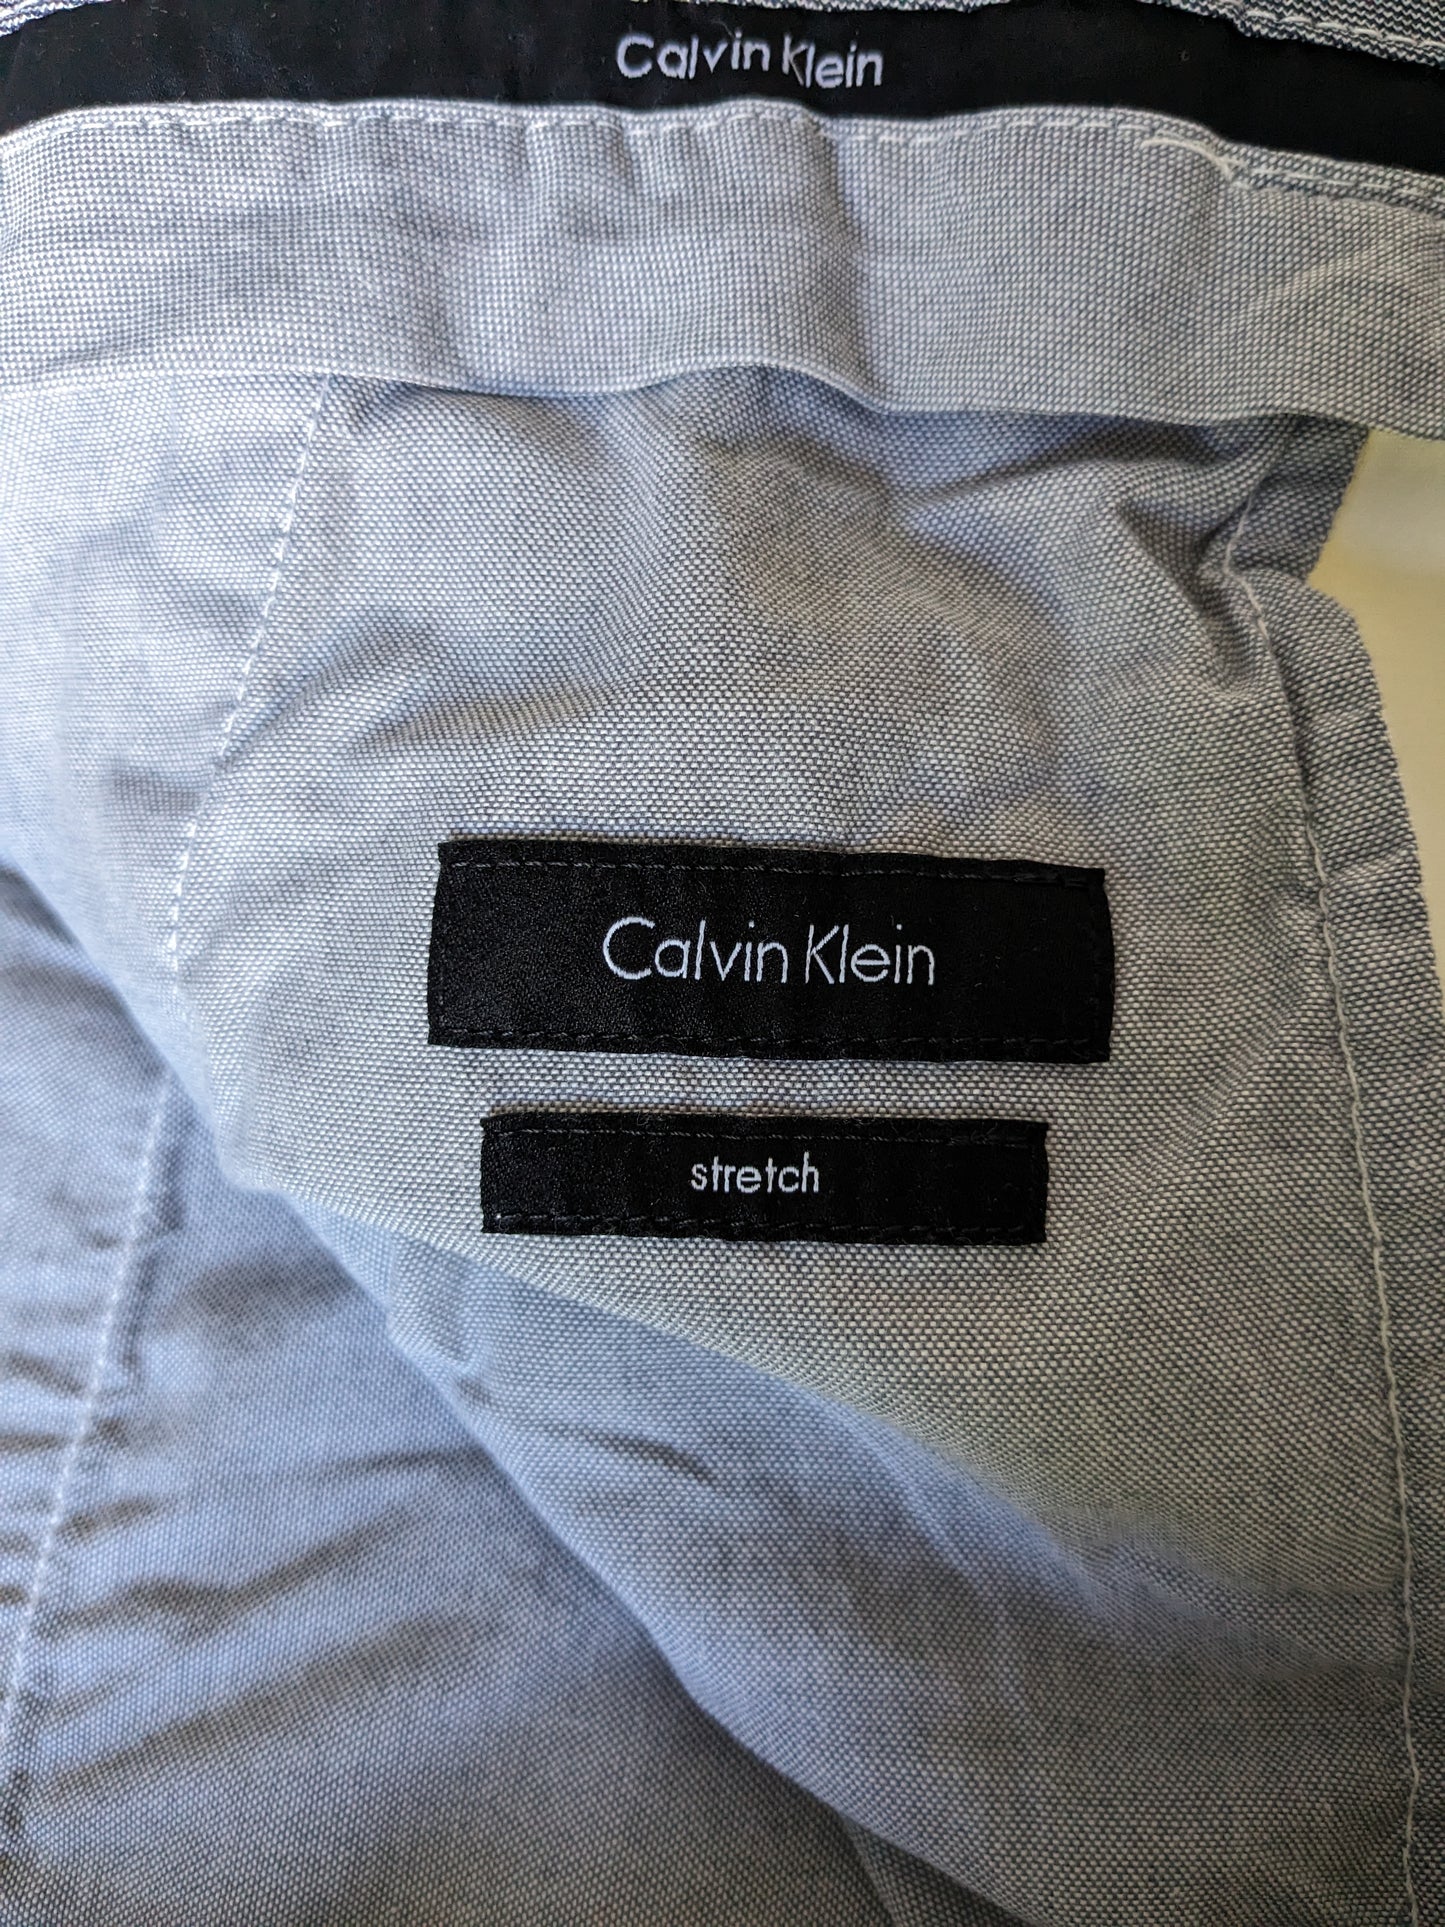 Calvin Klein Hosen / Hosen. Weiß gefärbt. Größe 58 / XL. Gerade Passform. Strecken.